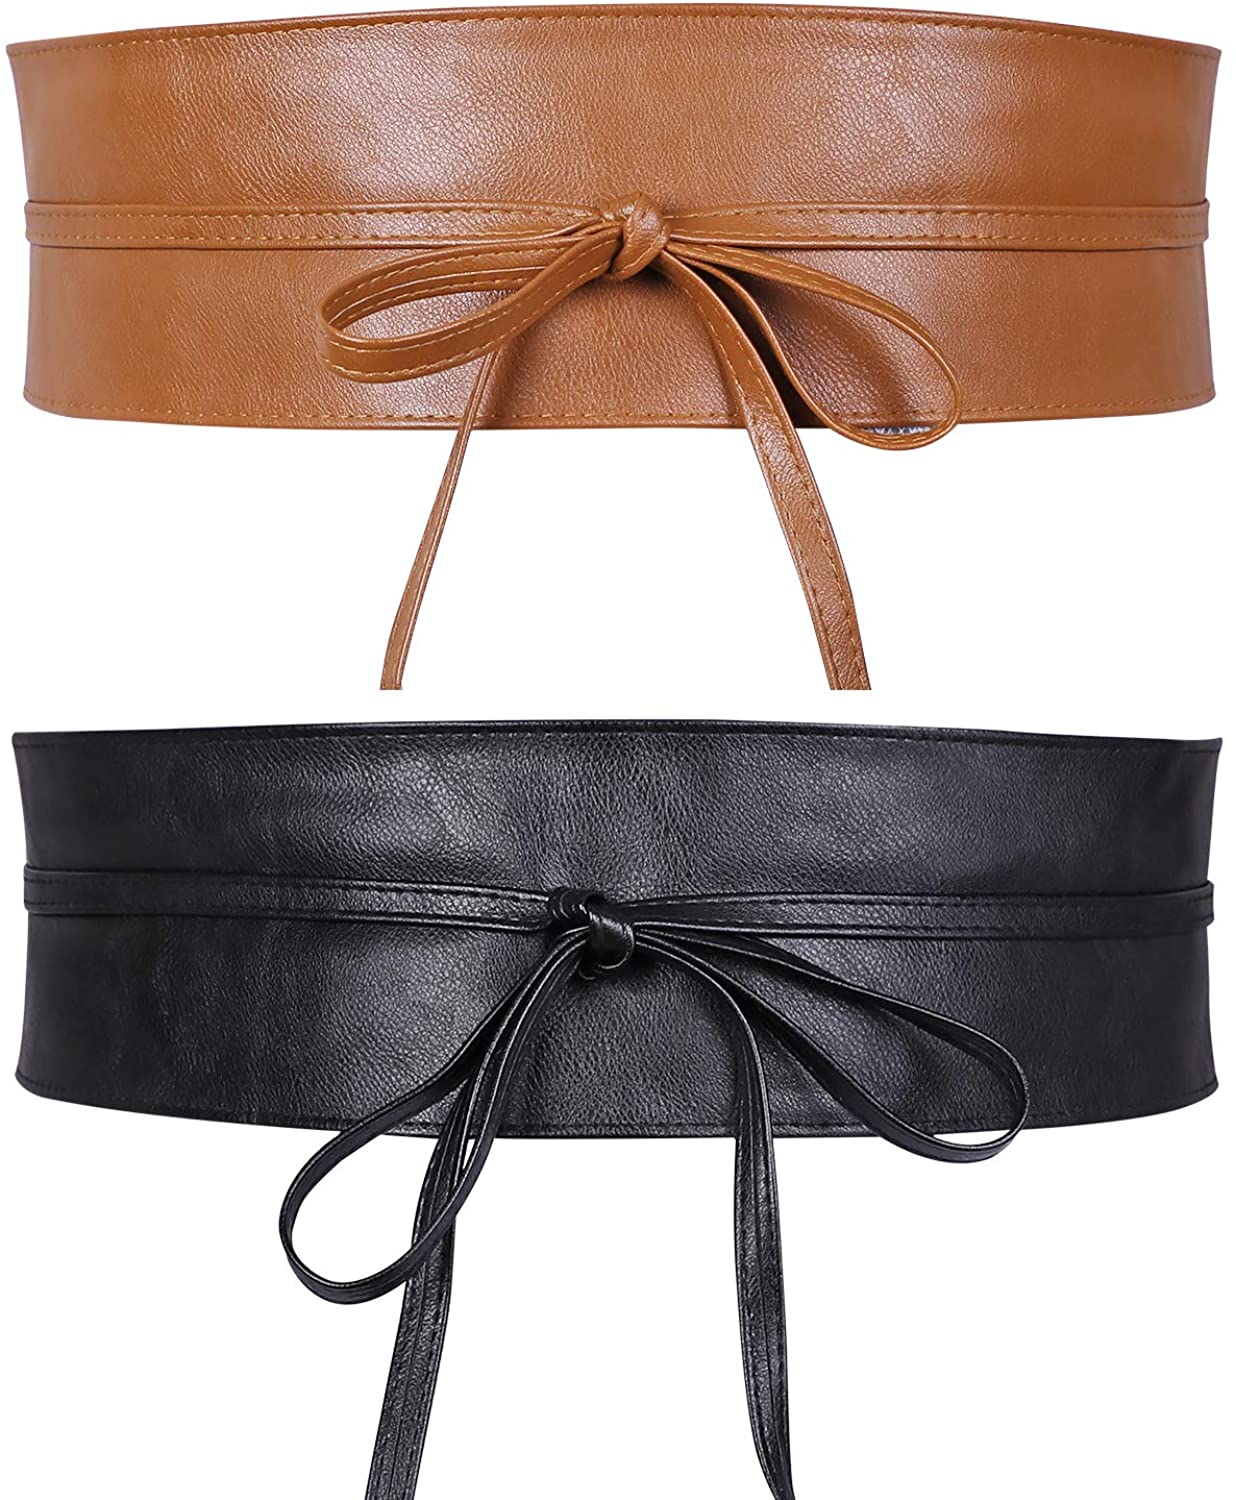 Women Obi Style Waist Belt Soft Faux Leather Wide Wrap Around Bowknot  Ladies Wai | eBay